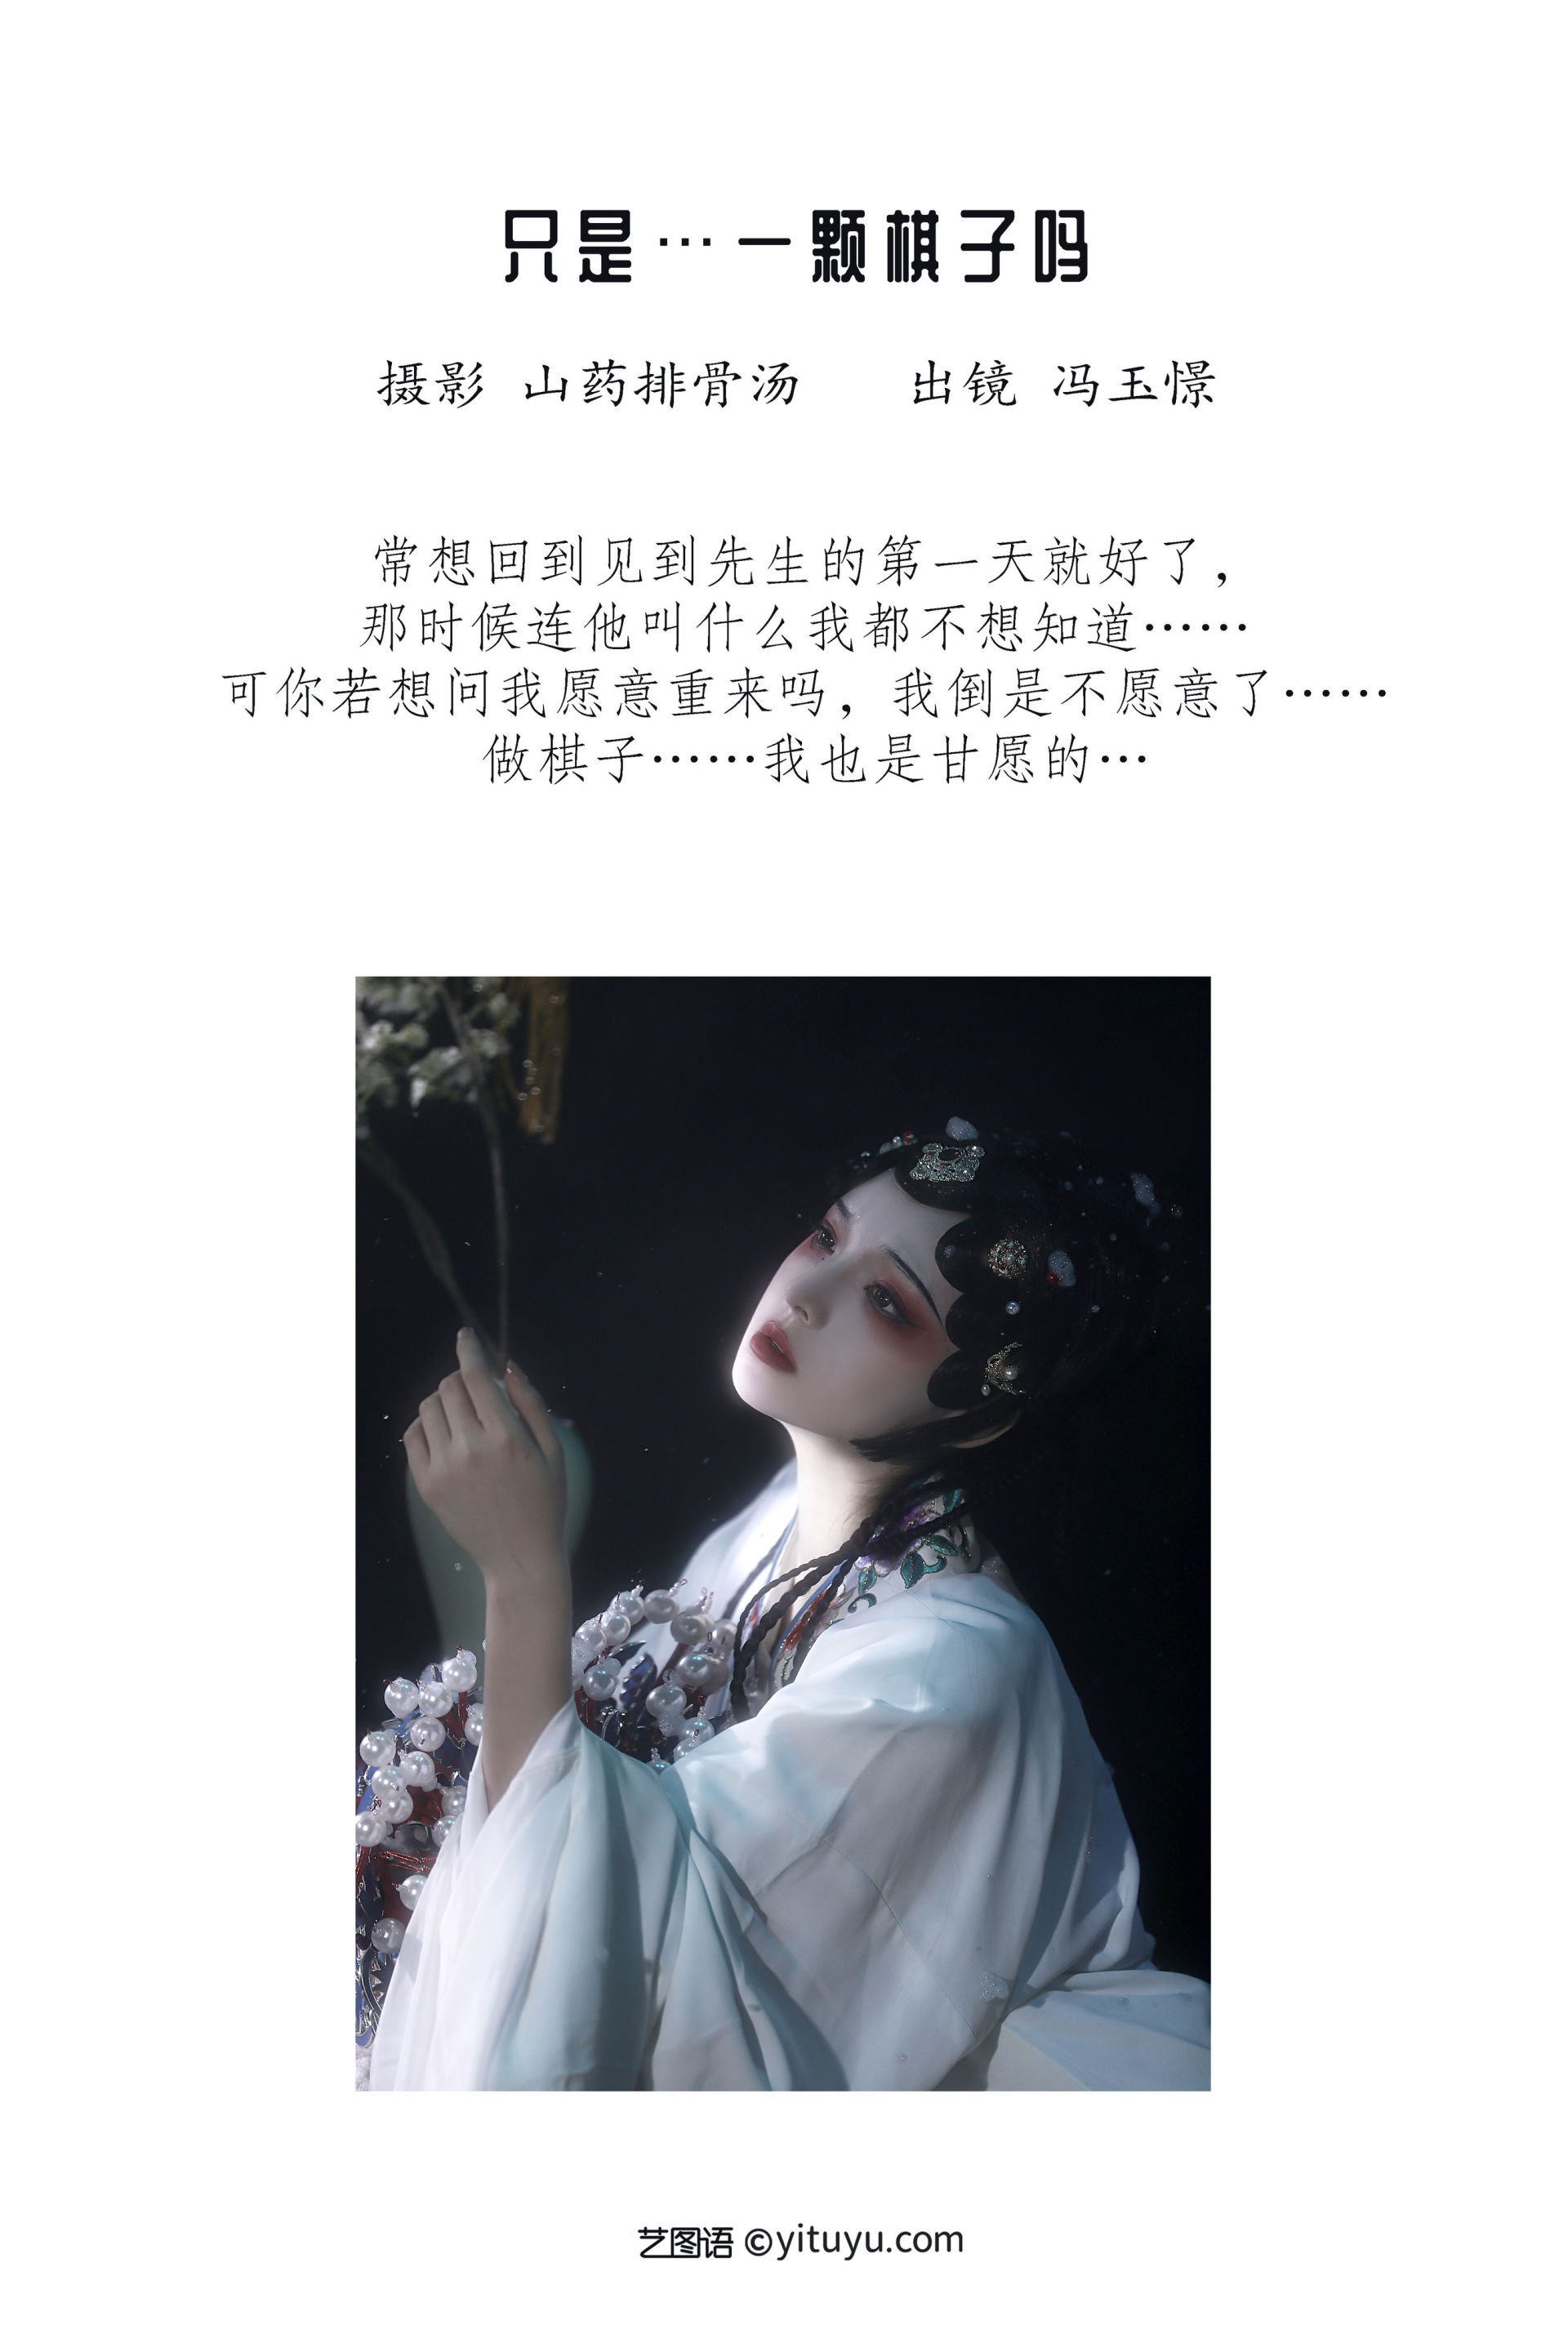 只是…一颗棋子吗 艺术 中国风 古典 戏曲人物